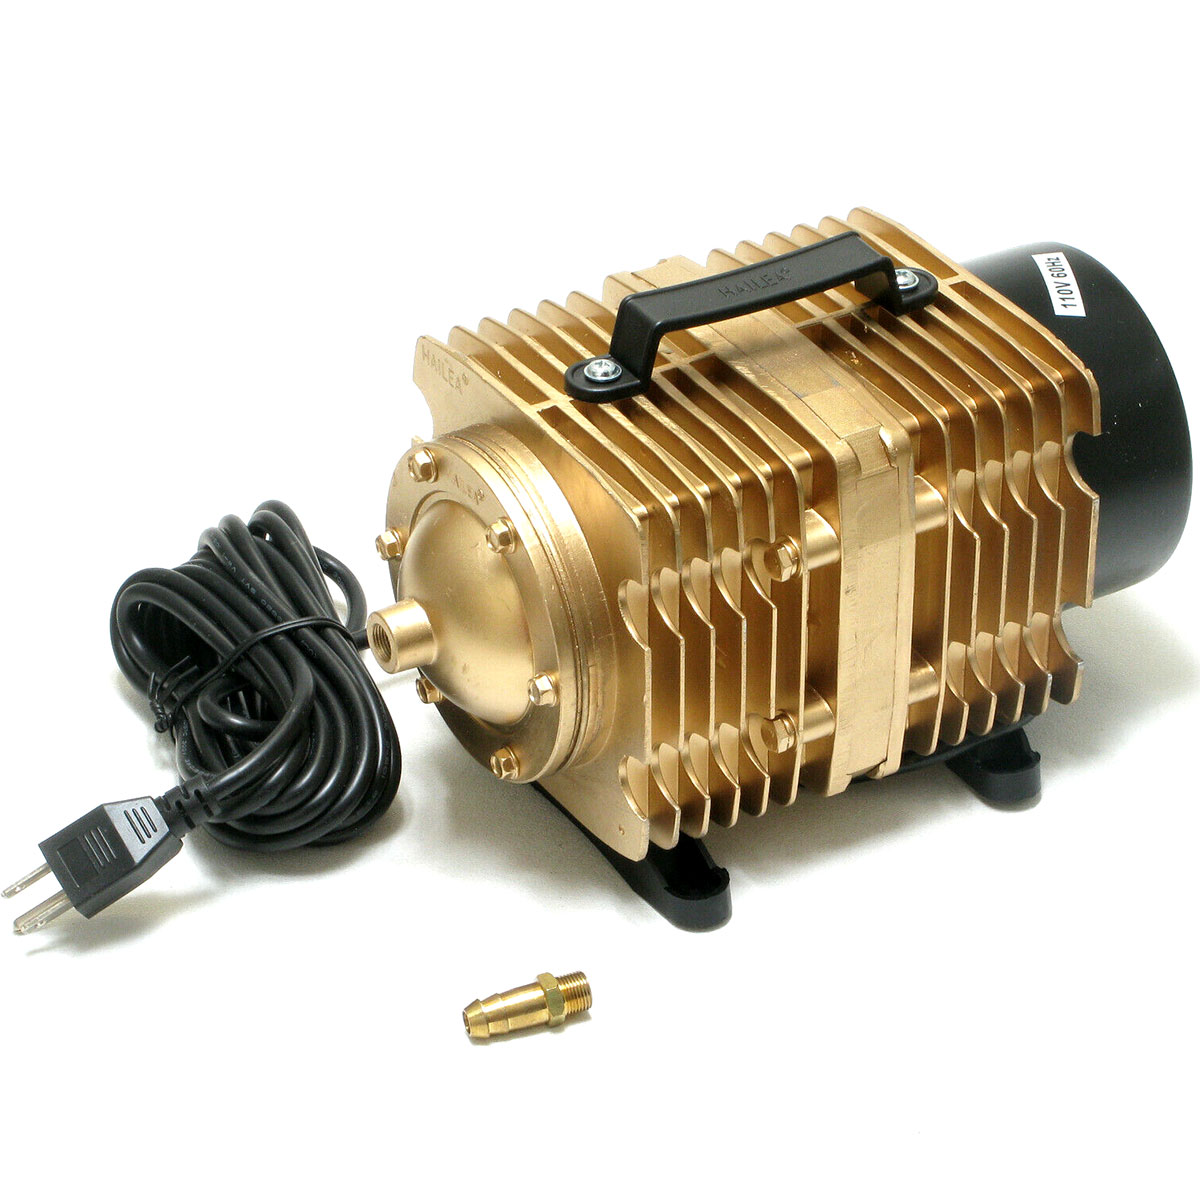 Laser Air Pump Air Assist Kit Air Compressor for Laser Engraver Cutting  Machine